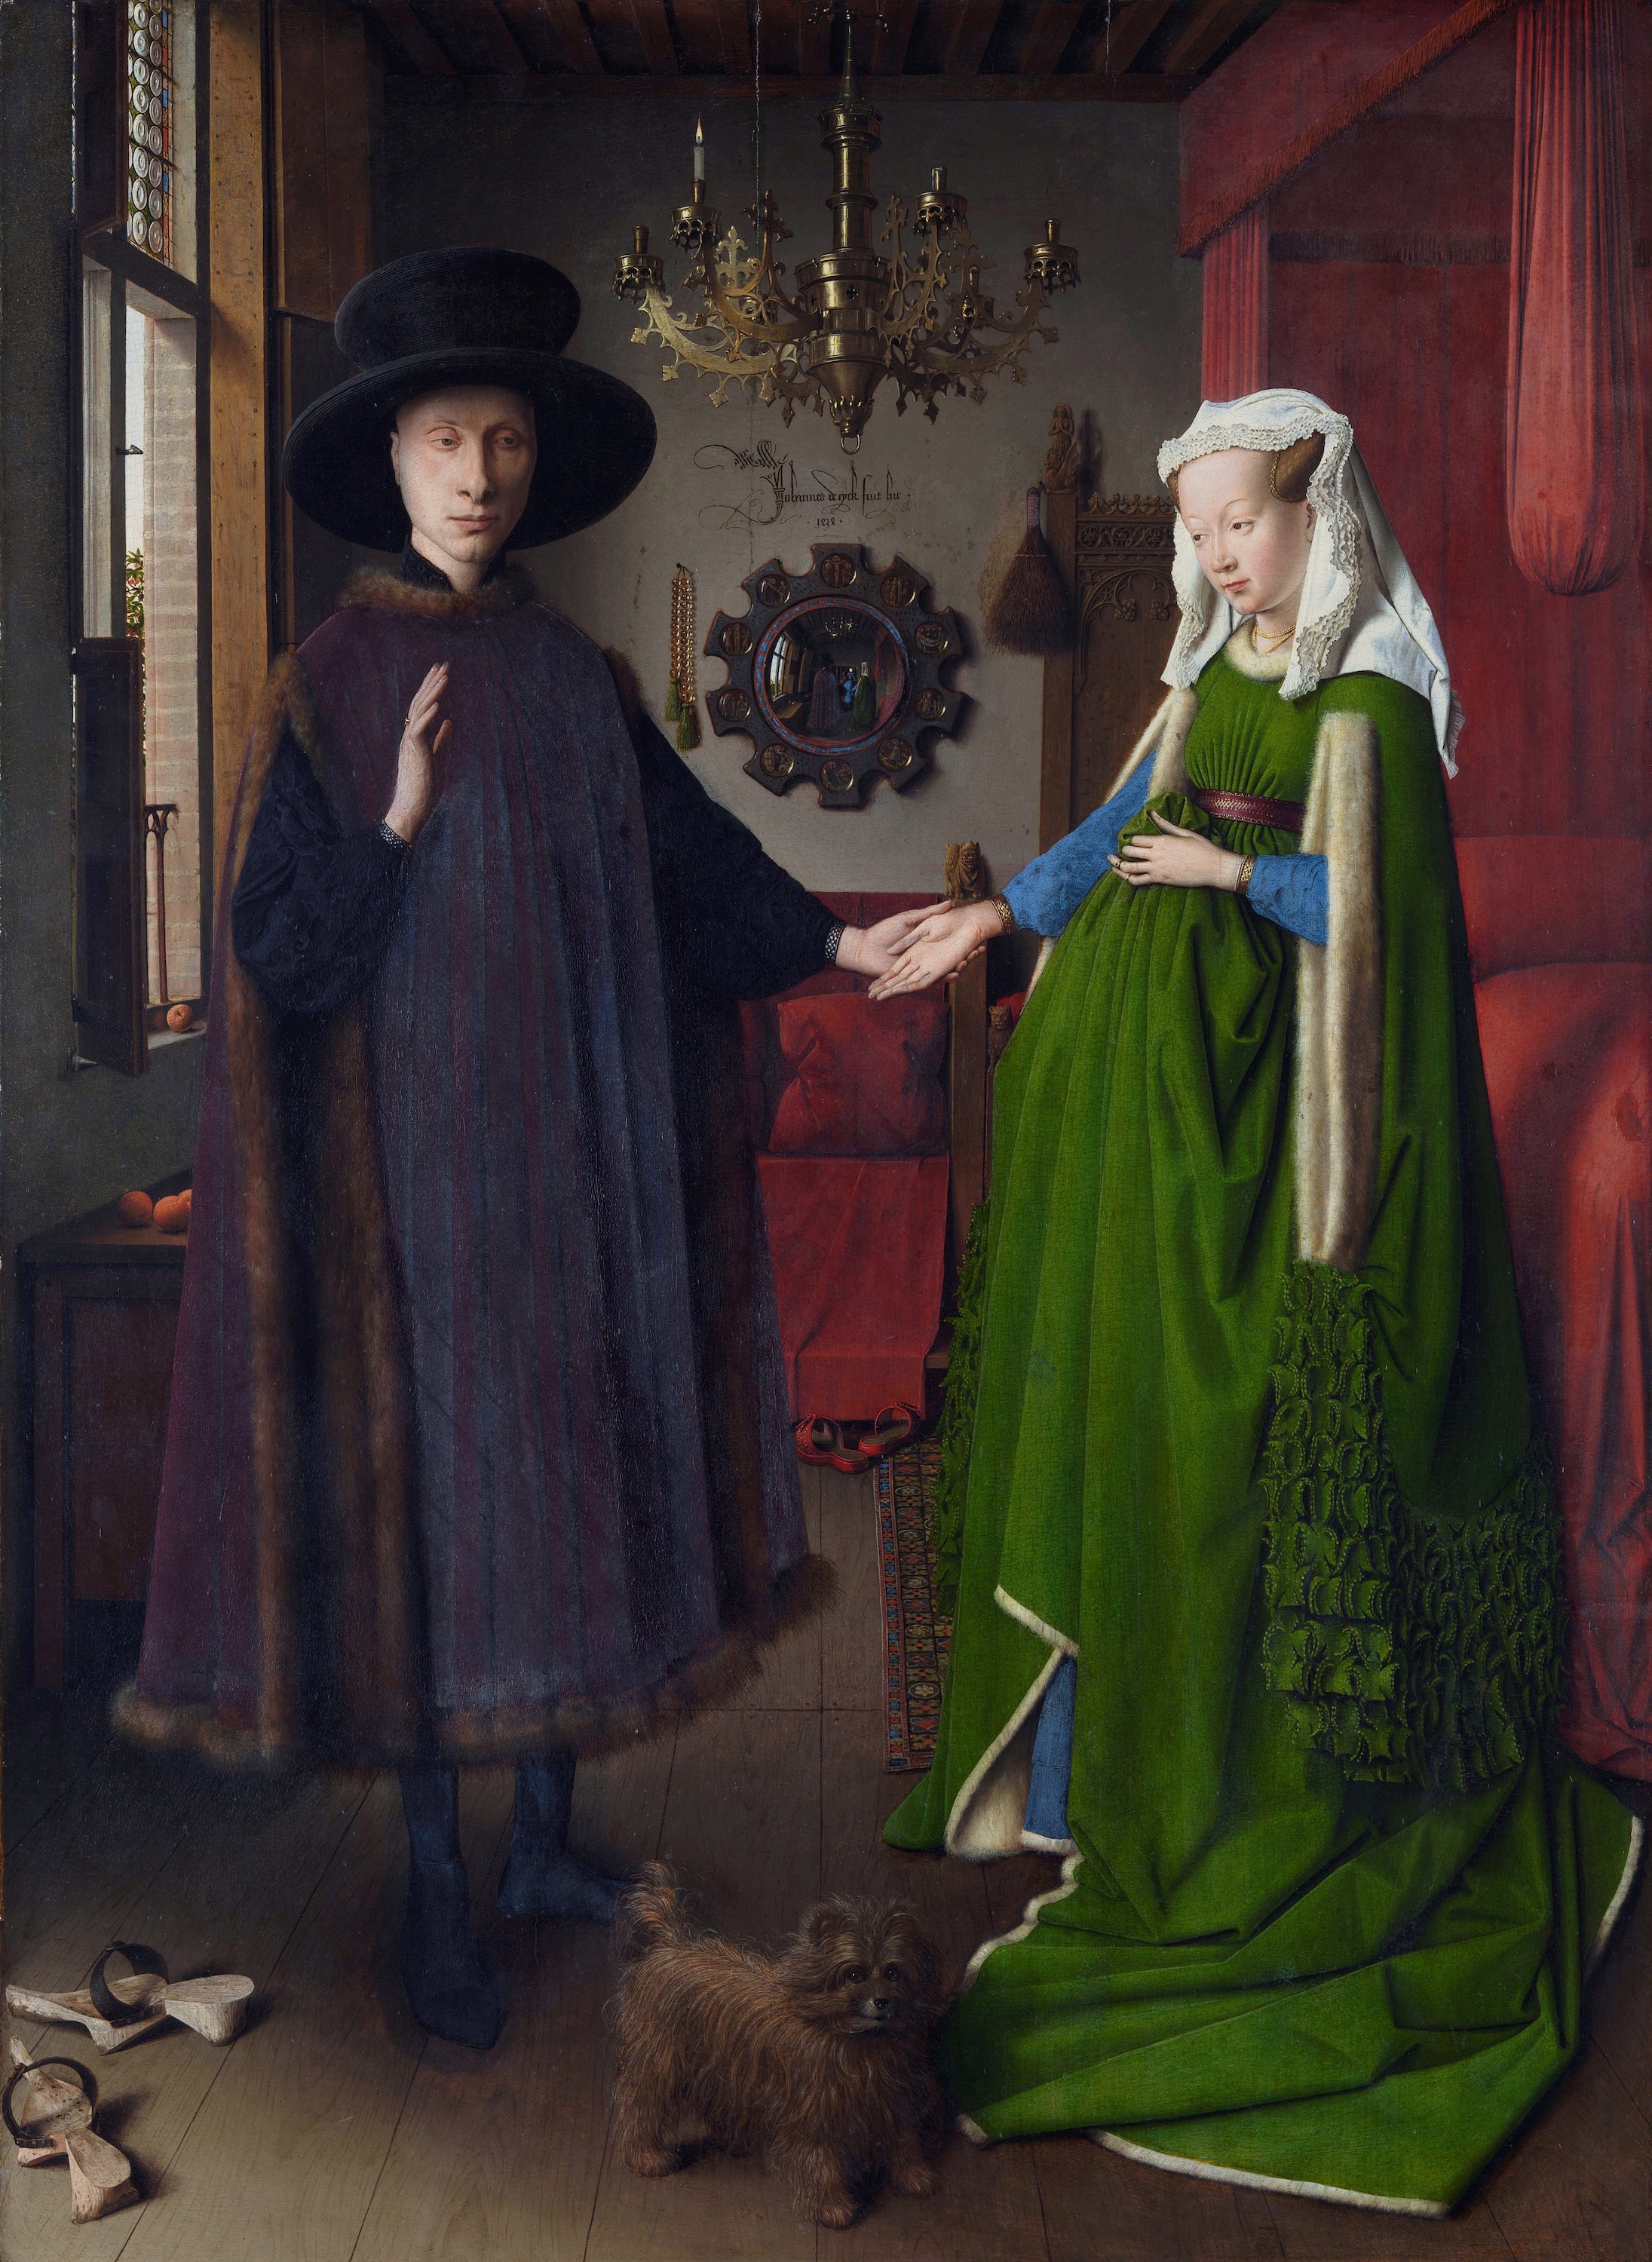 Soții Arnolfini by Jan van Eyck - 1434 - 82 x 60 cm 